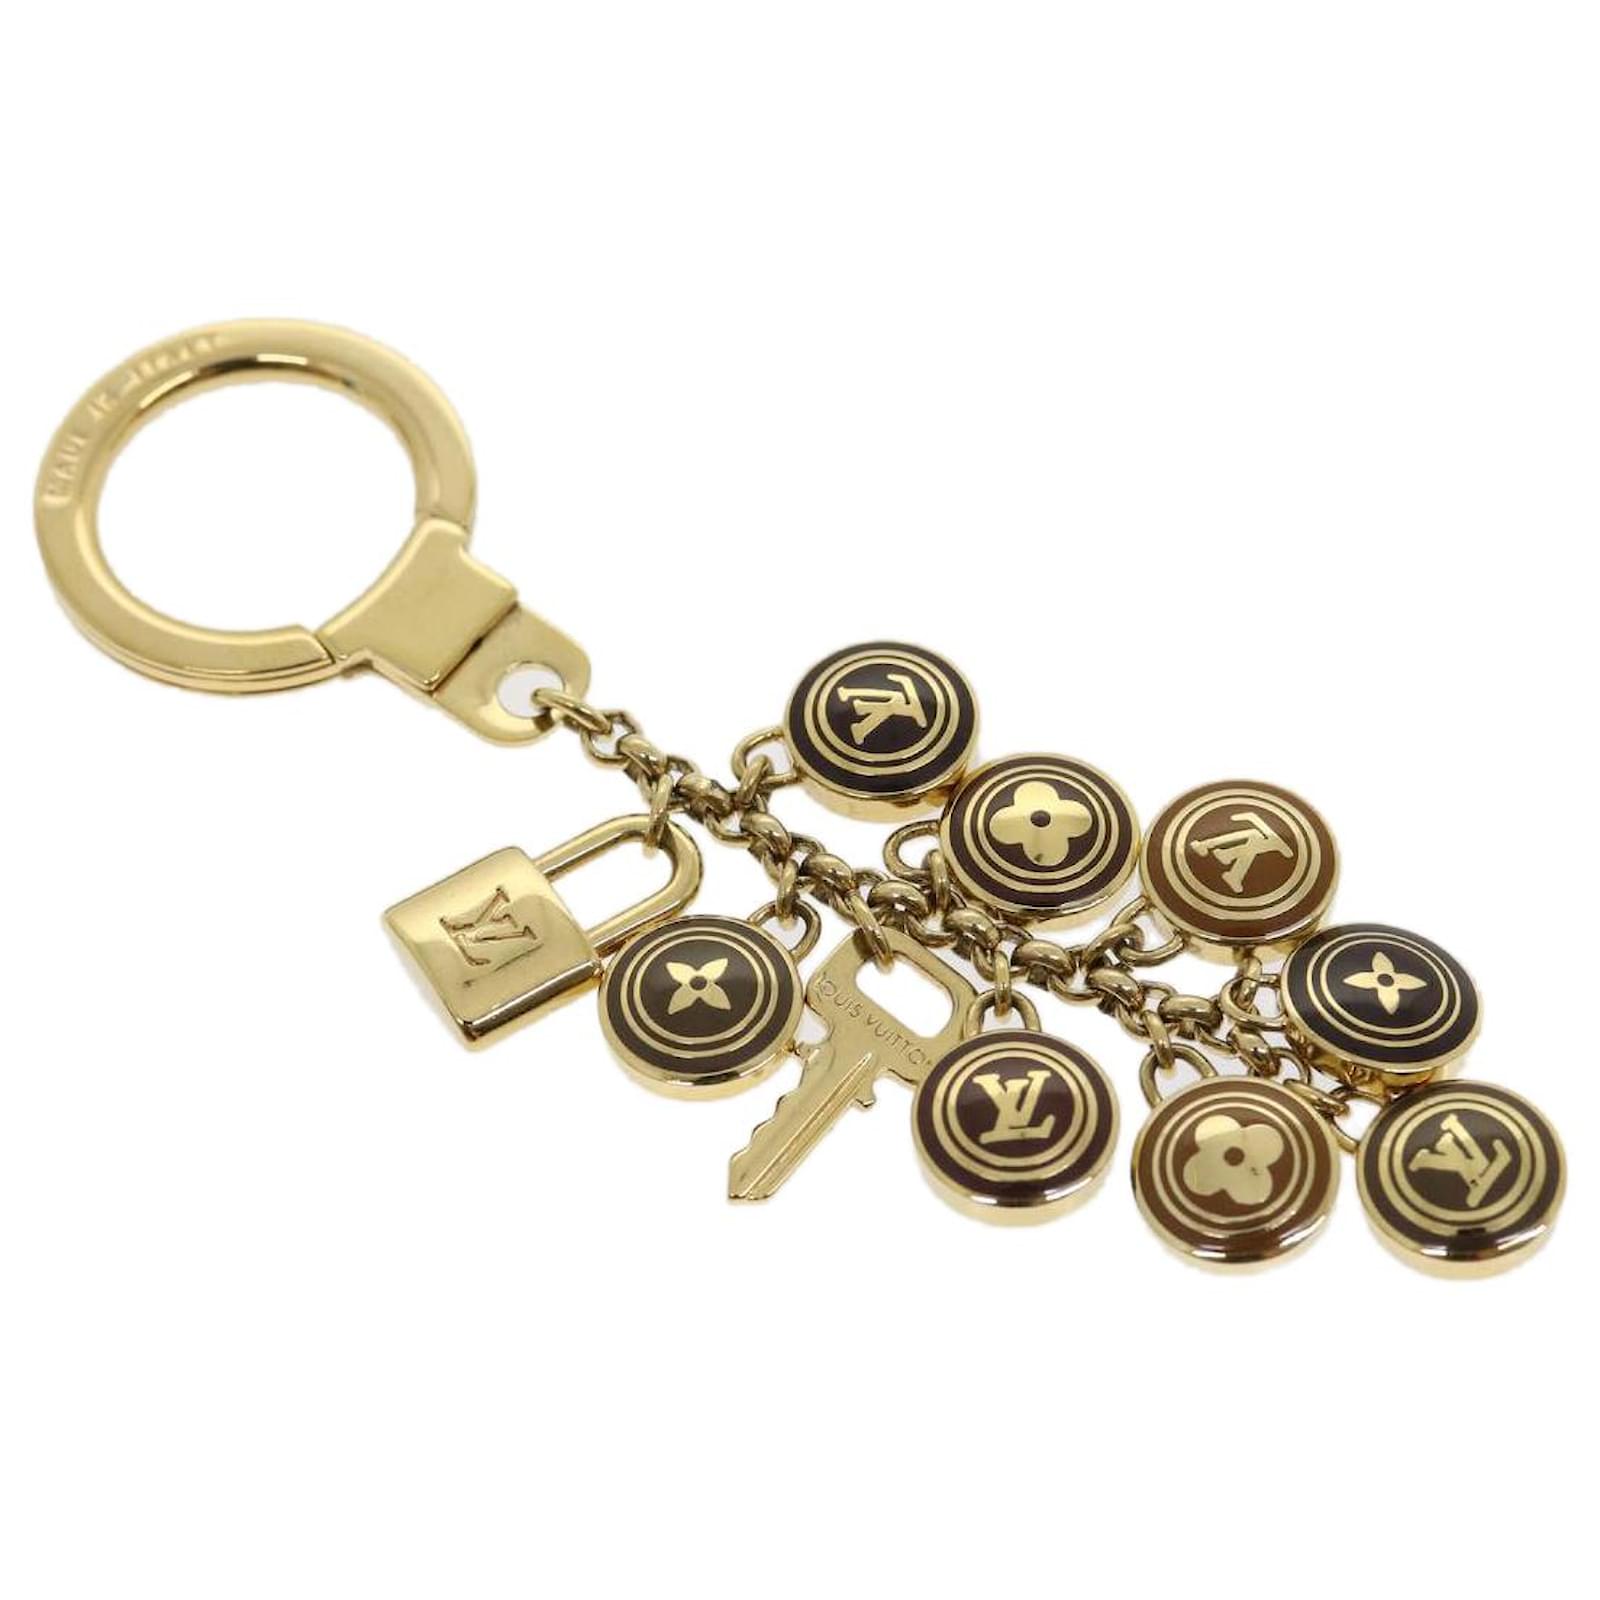 Louis Vuitton Pastilles Bag Charm - Gold Keychains, Accessories